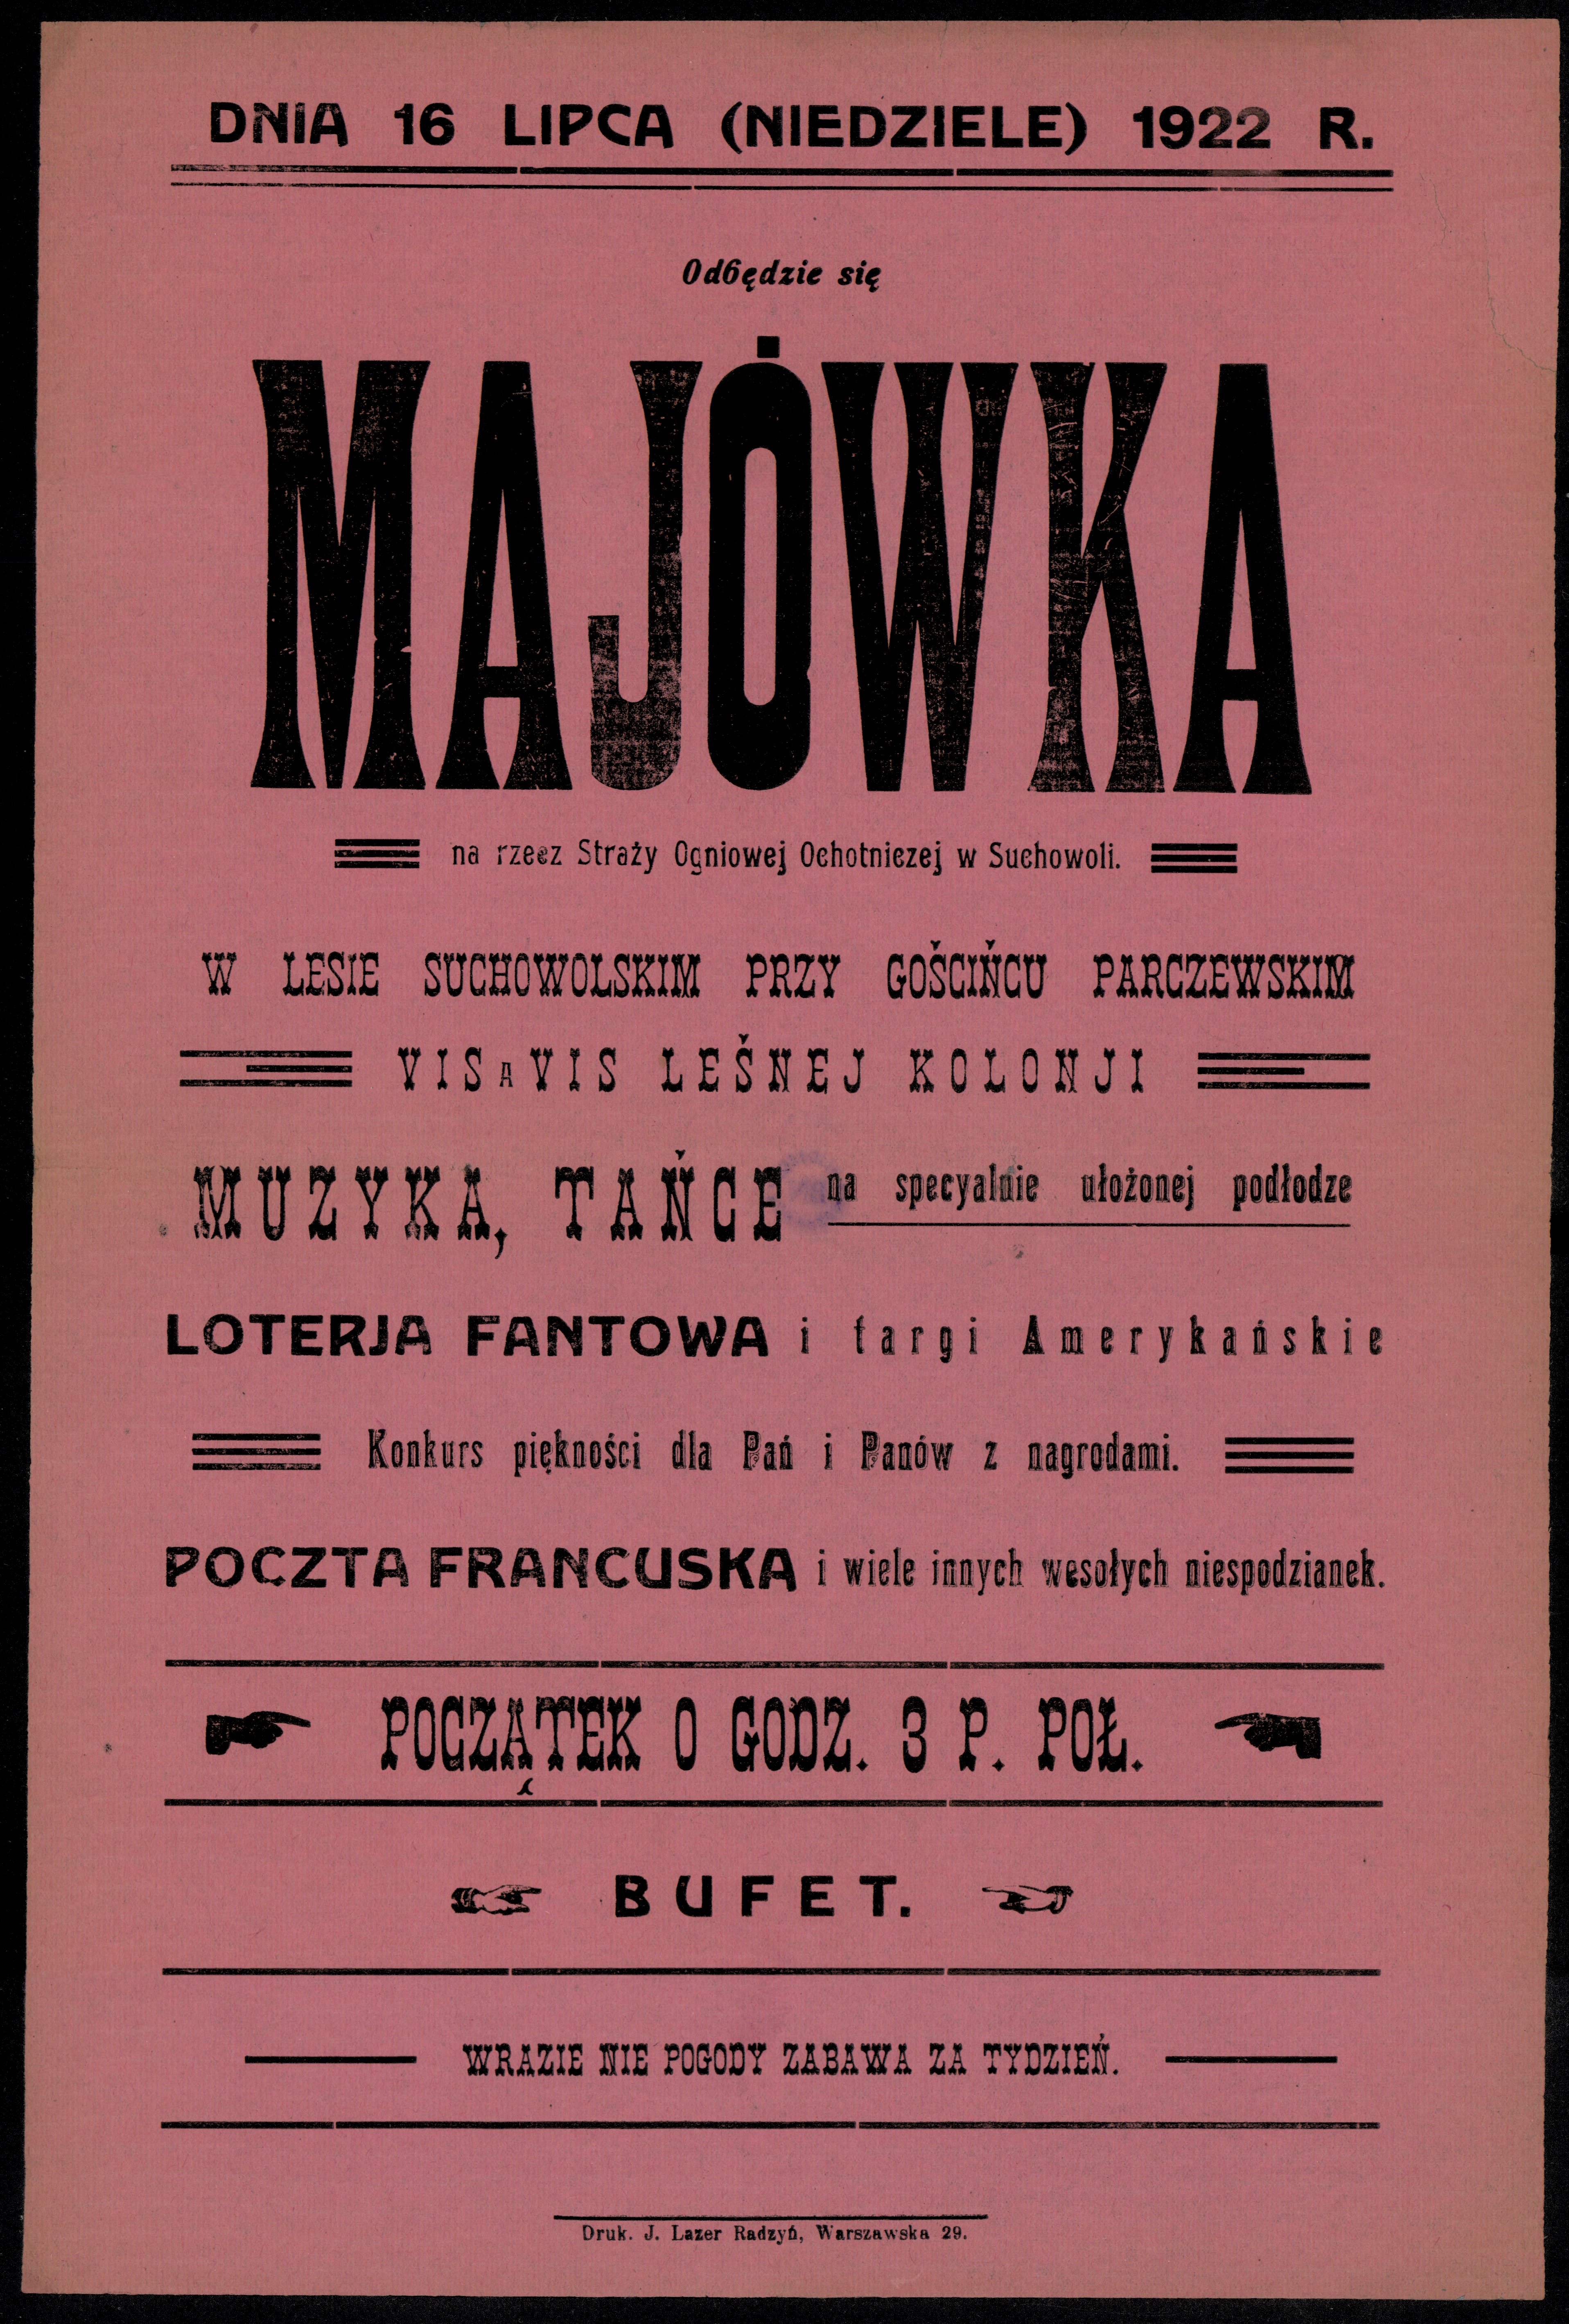 Majówka w lipcu? "Dnia 16 lipca (niedziela) 1922 r. odbędzie się majówka na rzecz Straży Ogniowej w Suchowoli", 1922, polona.pl